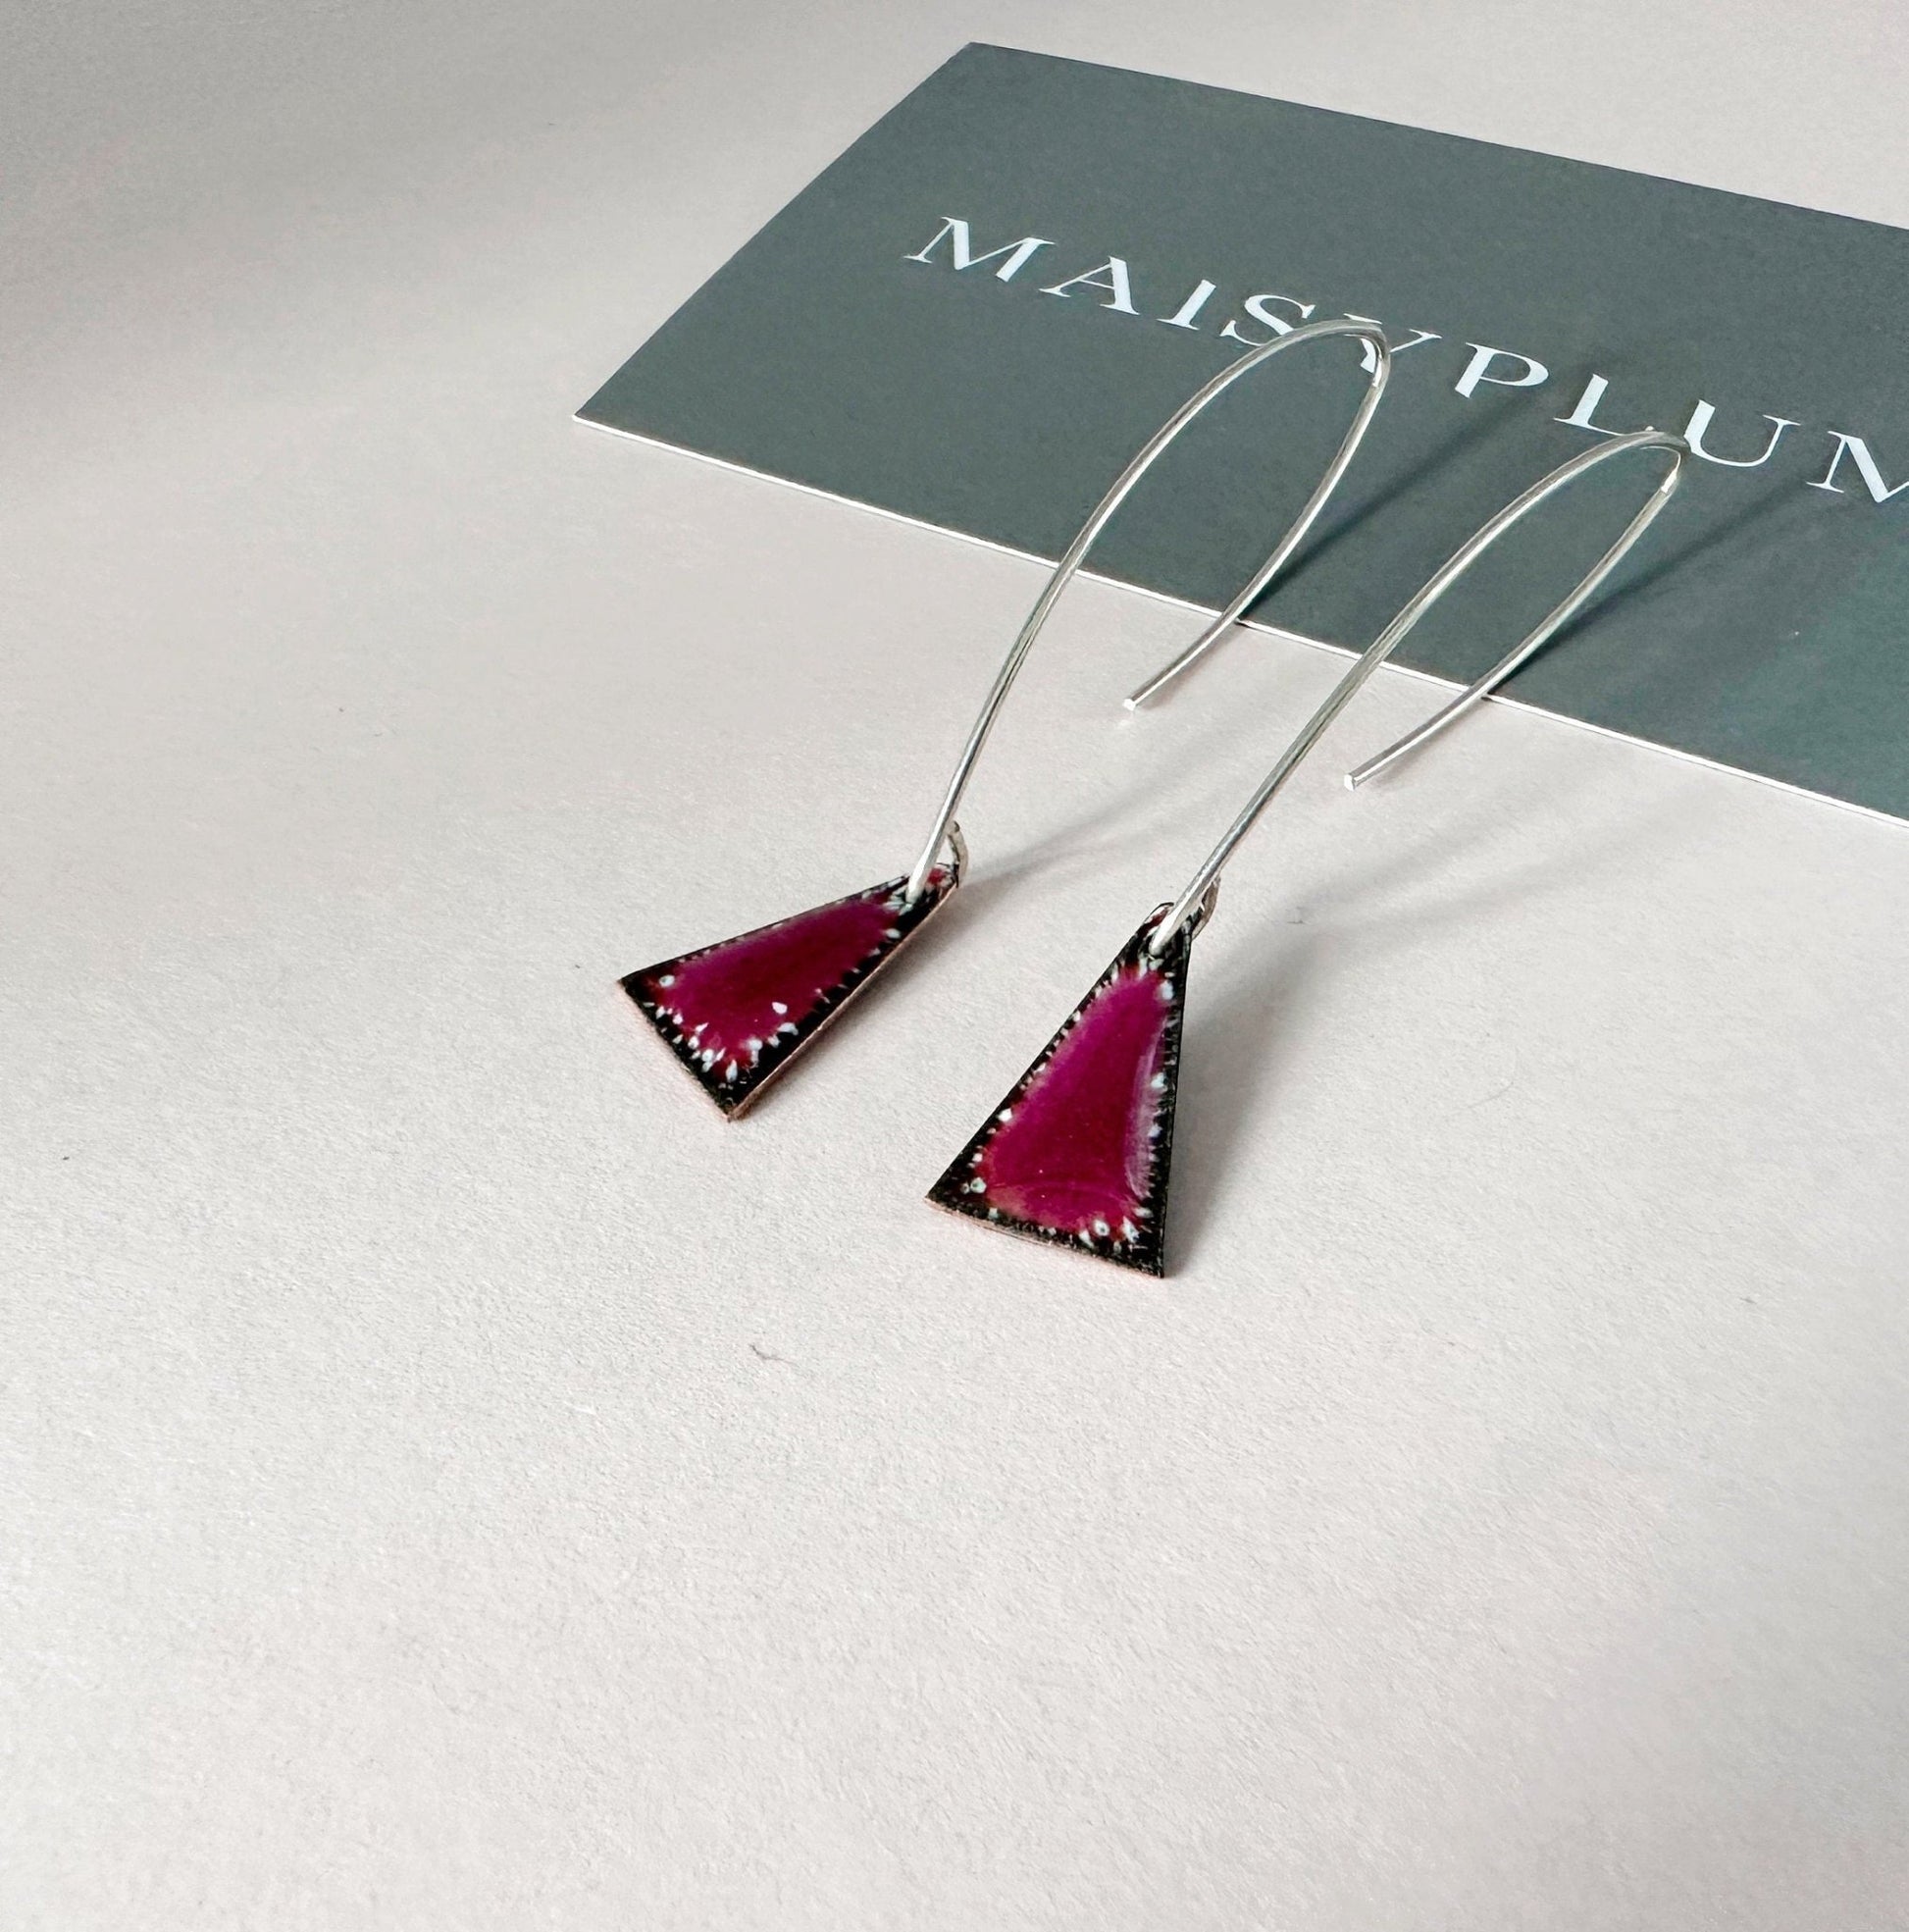 Raspberry Pink Enamel Triangle Shaped Earrings, Geometric Drop Earrings with Silver Ear Wires - MaisyPlum